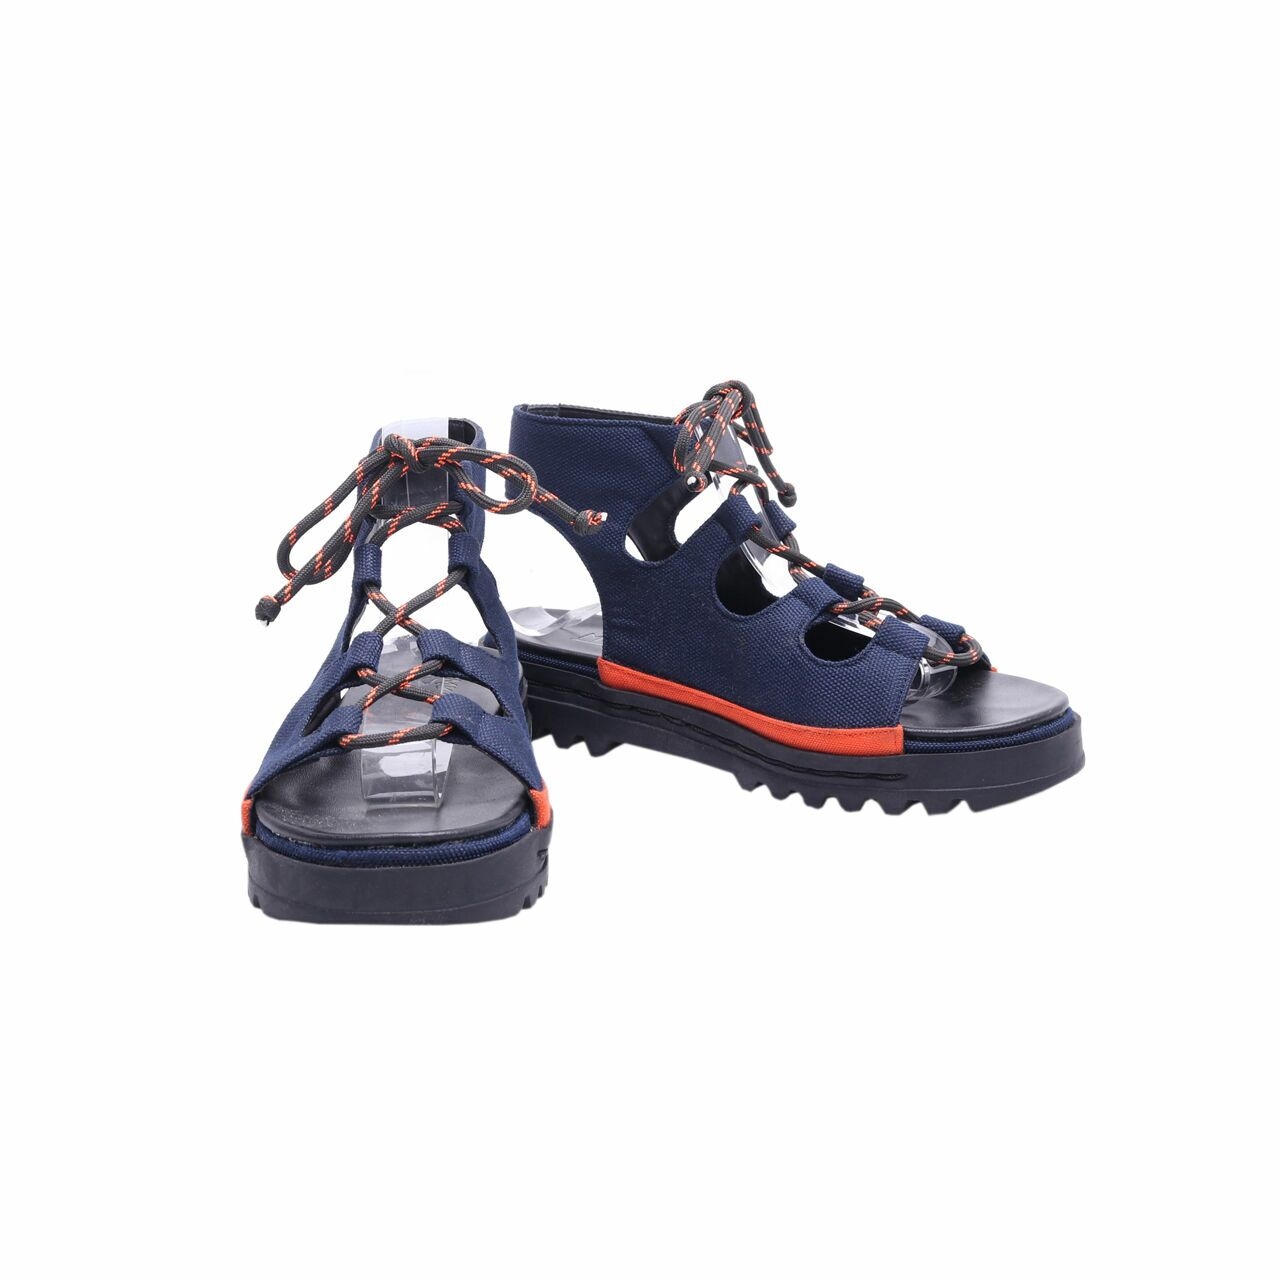 MKS' Navy & Orange Ghillie Sandals